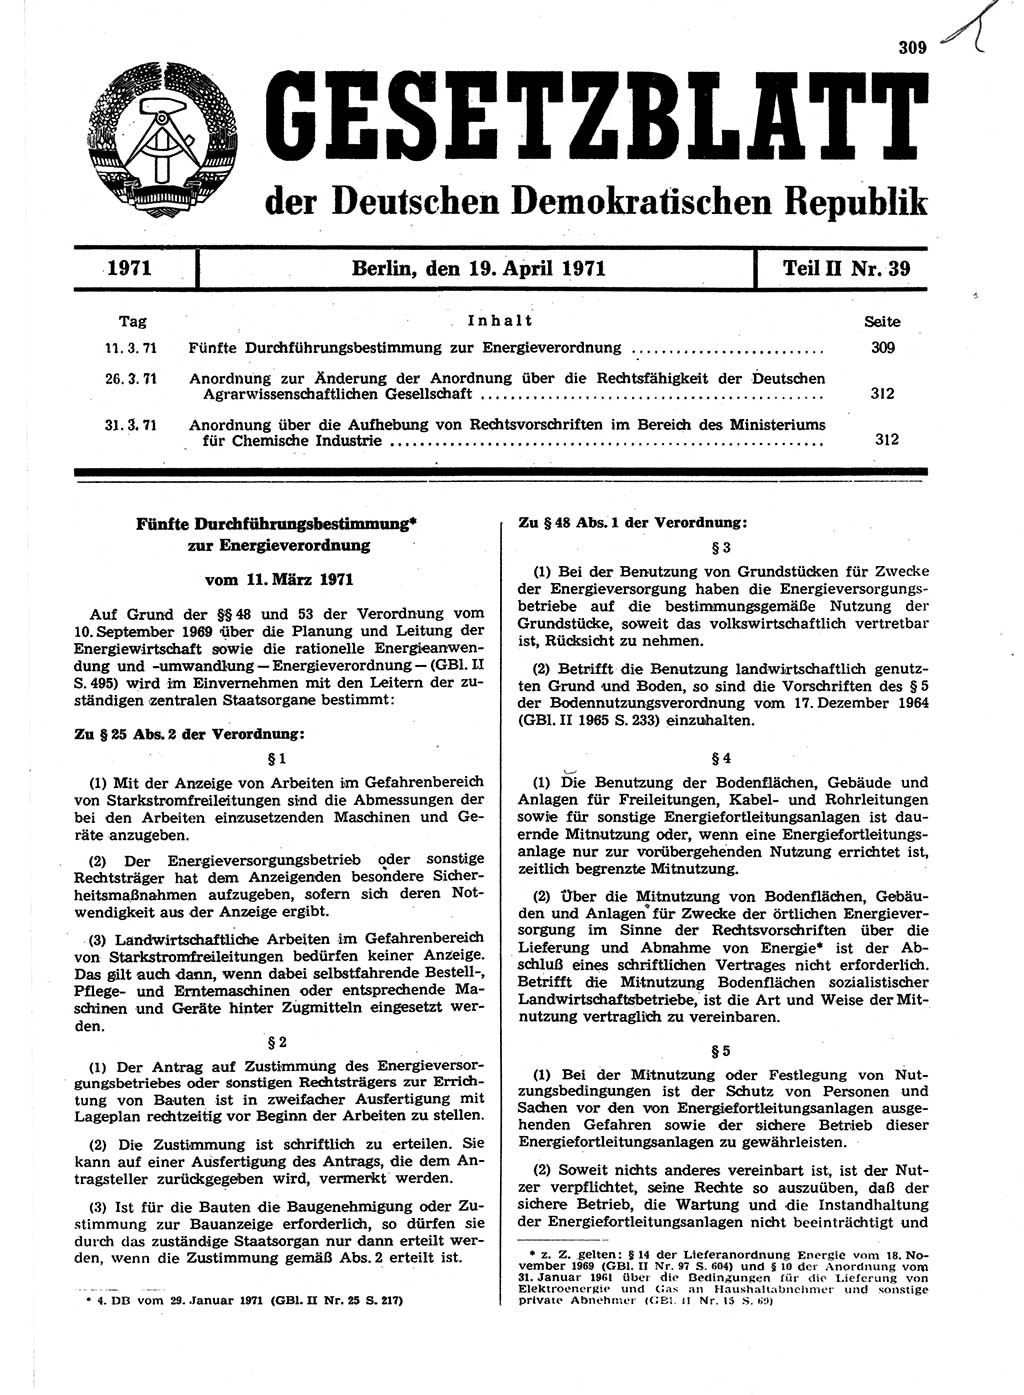 Gesetzblatt (GBl.) der Deutschen Demokratischen Republik (DDR) Teil ⅠⅠ 1971, Seite 309 (GBl. DDR ⅠⅠ 1971, S. 309)